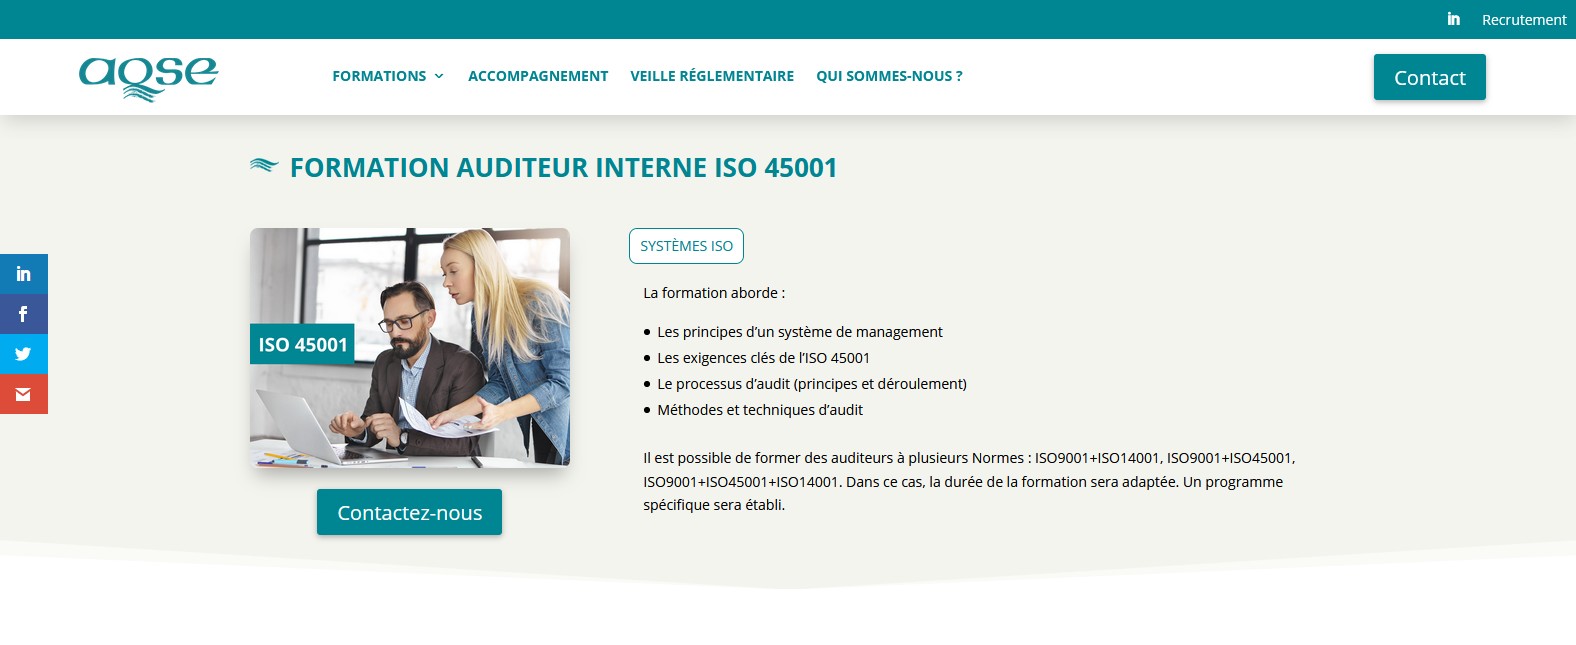 AQSE-france.fr la formation auditeur interne ISO 45001